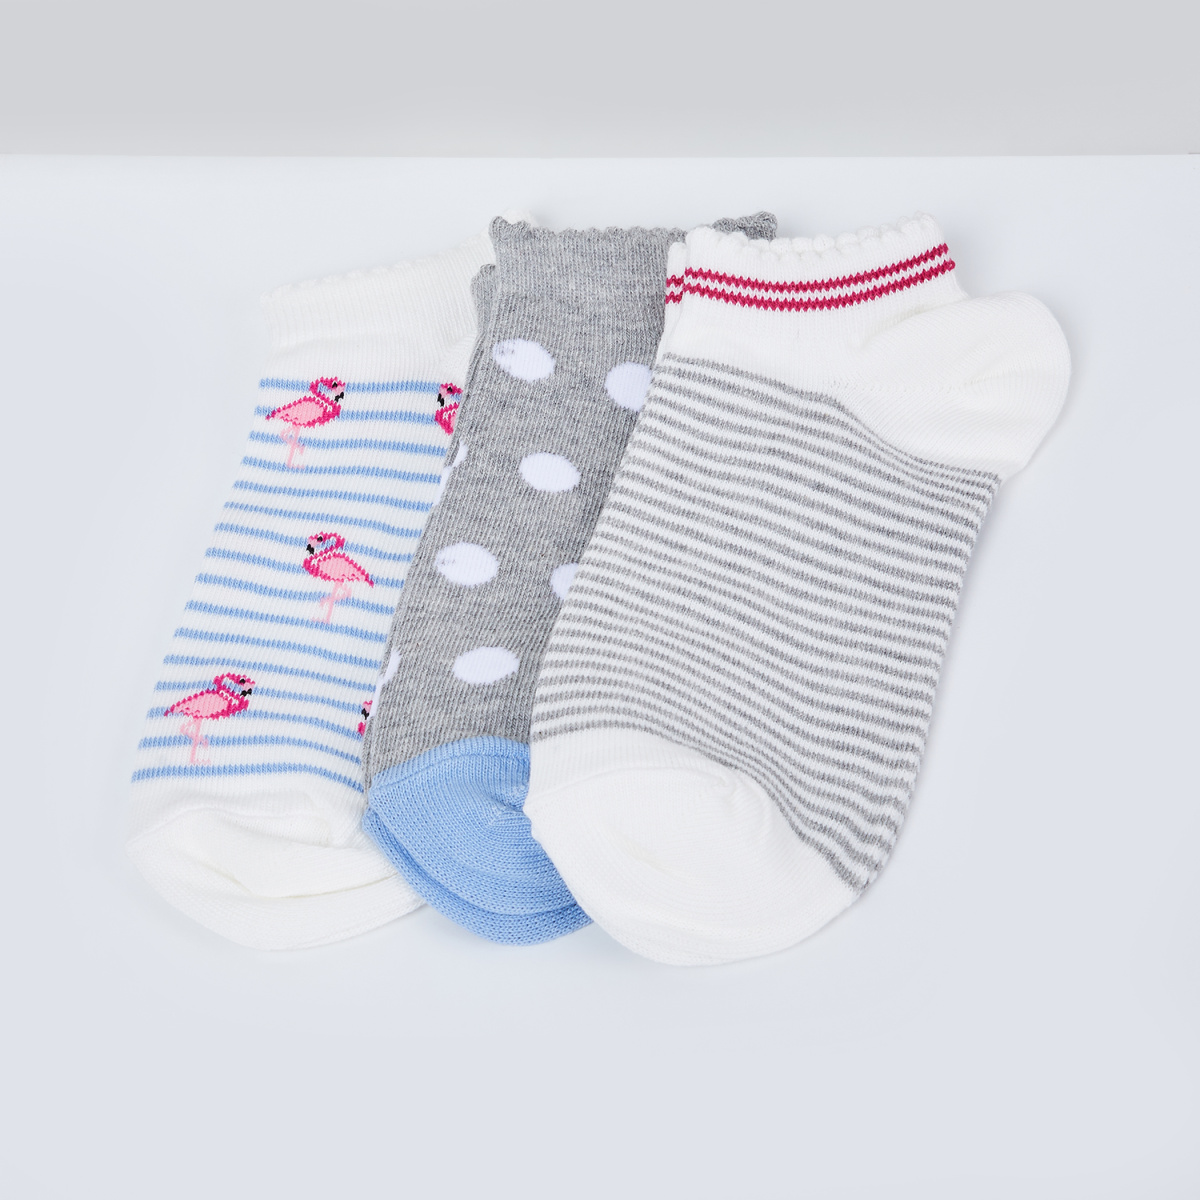 MAX Woven Design Socks- Pack of 3